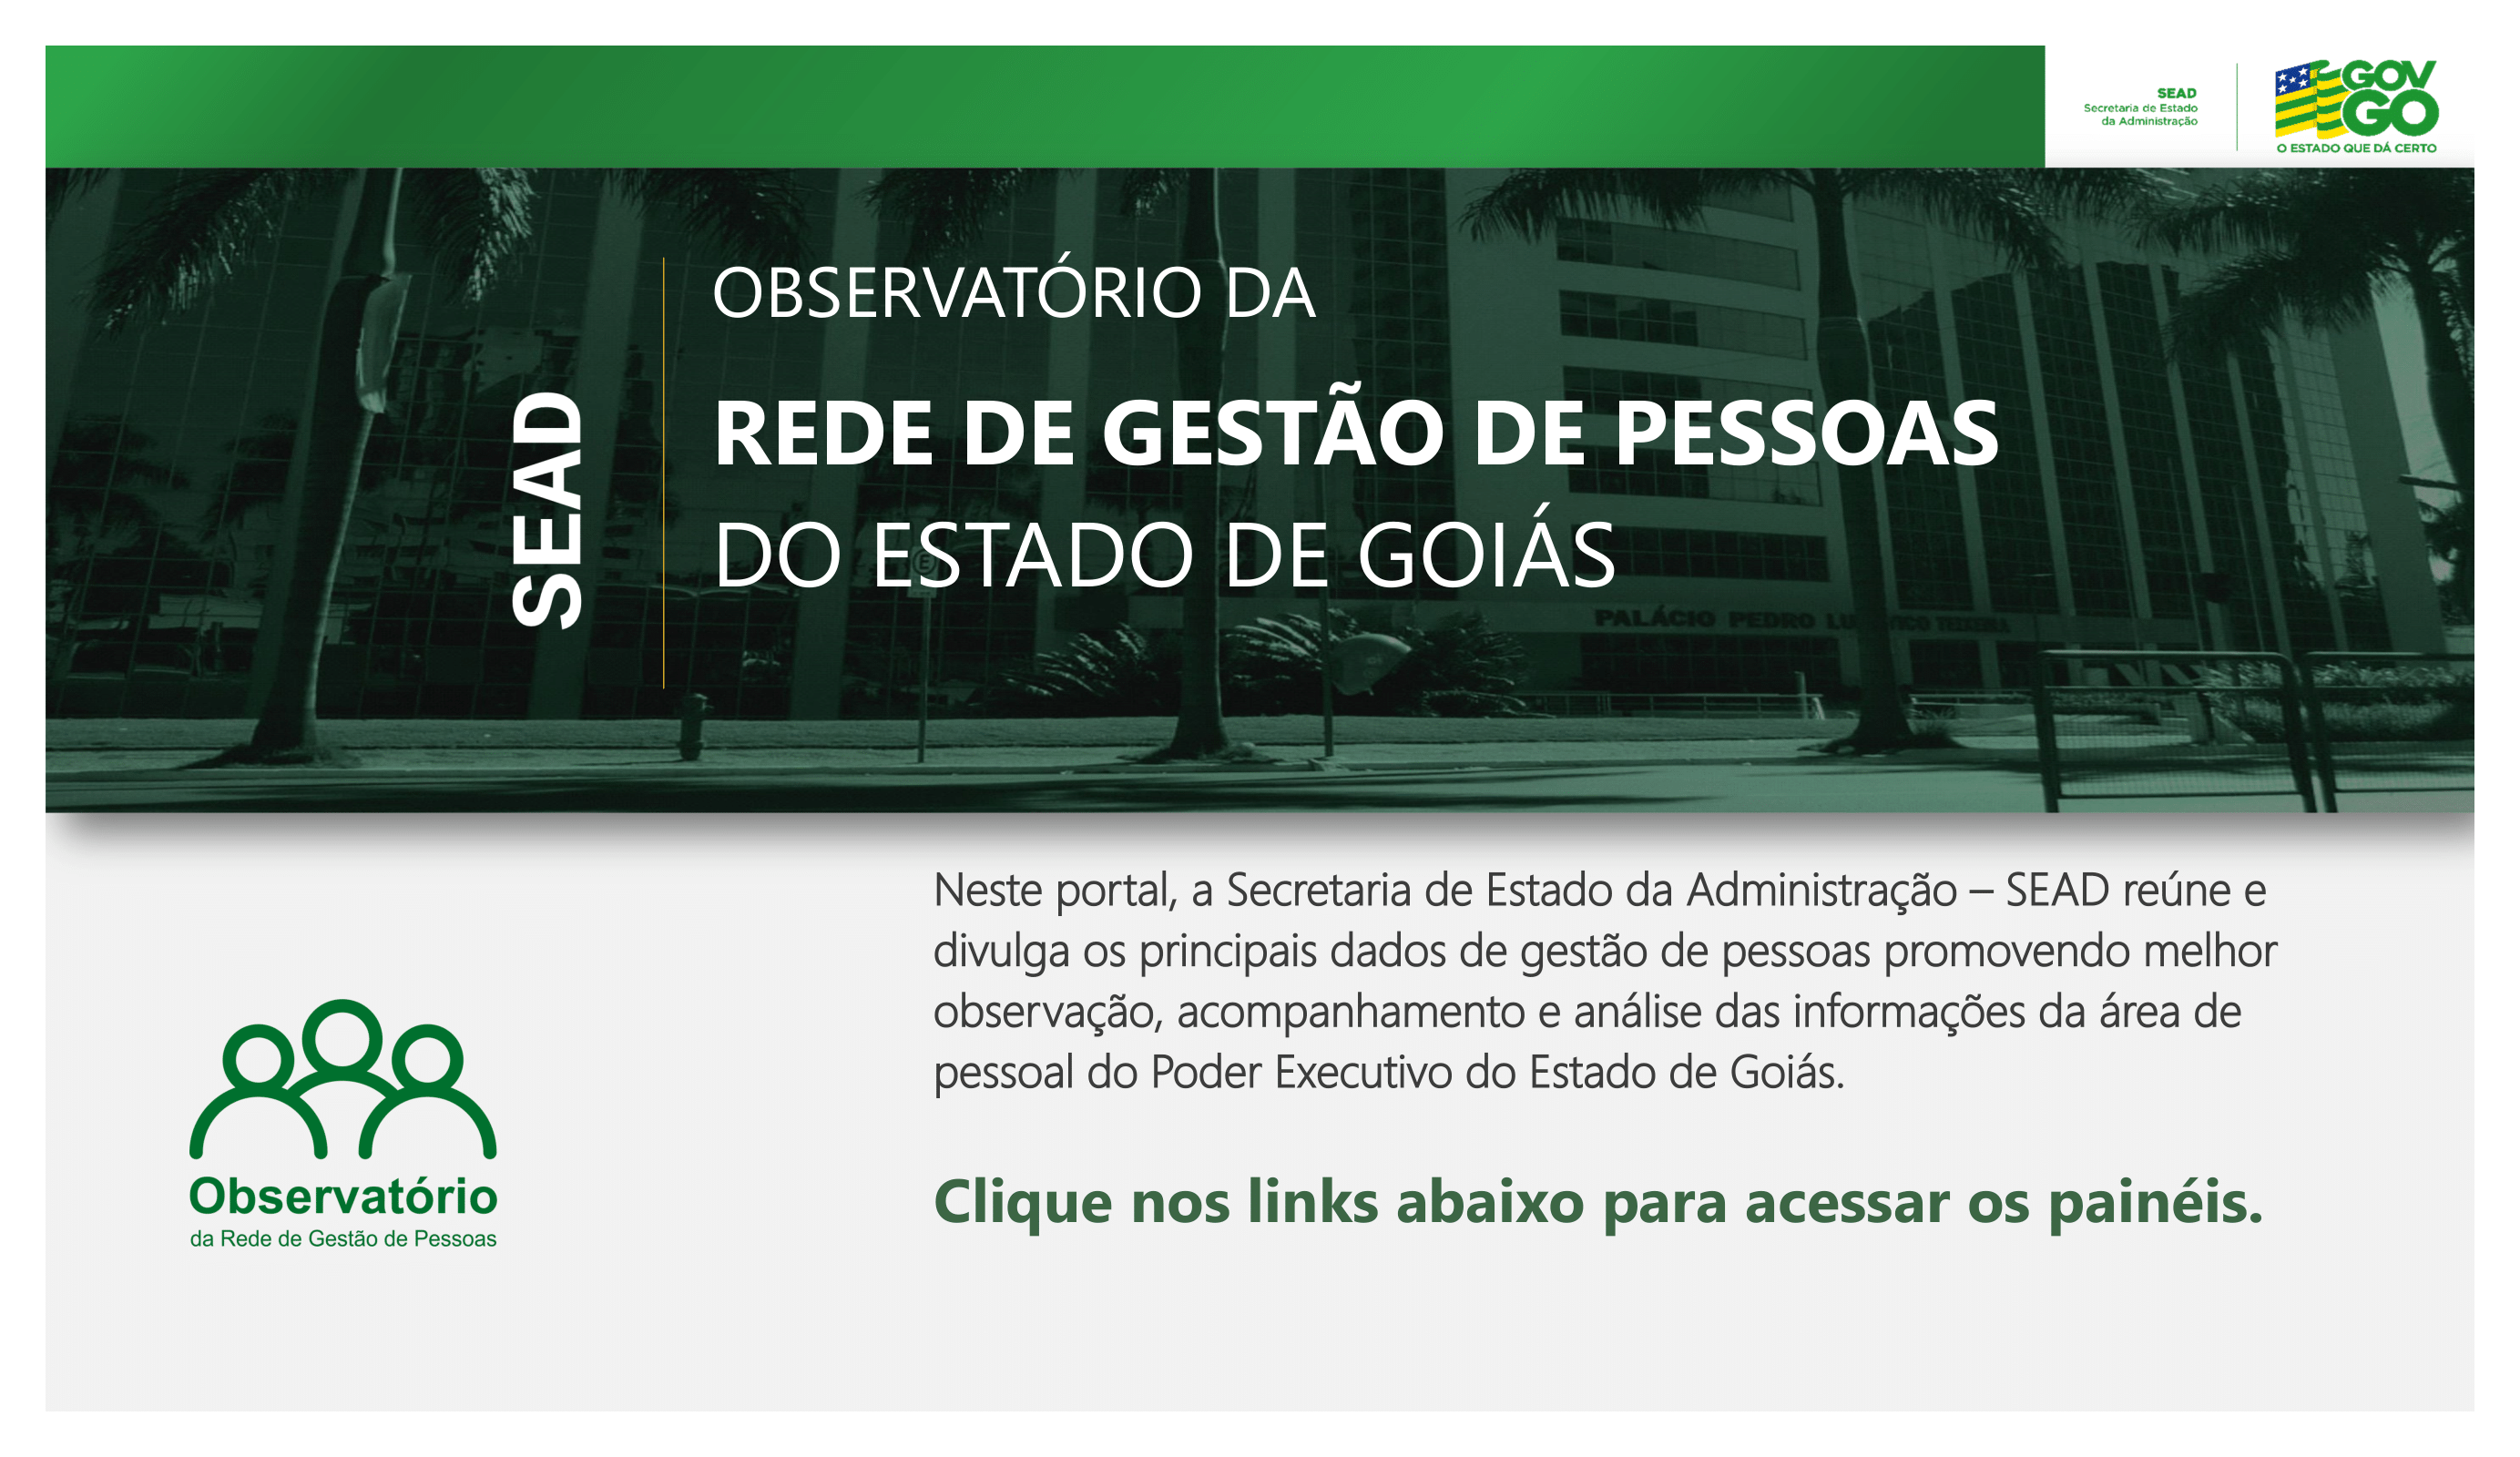 OBSERVATÓRIO DA REDE DE GESTÃO DE PESSOAS DO ESTADO DE GOIÁS